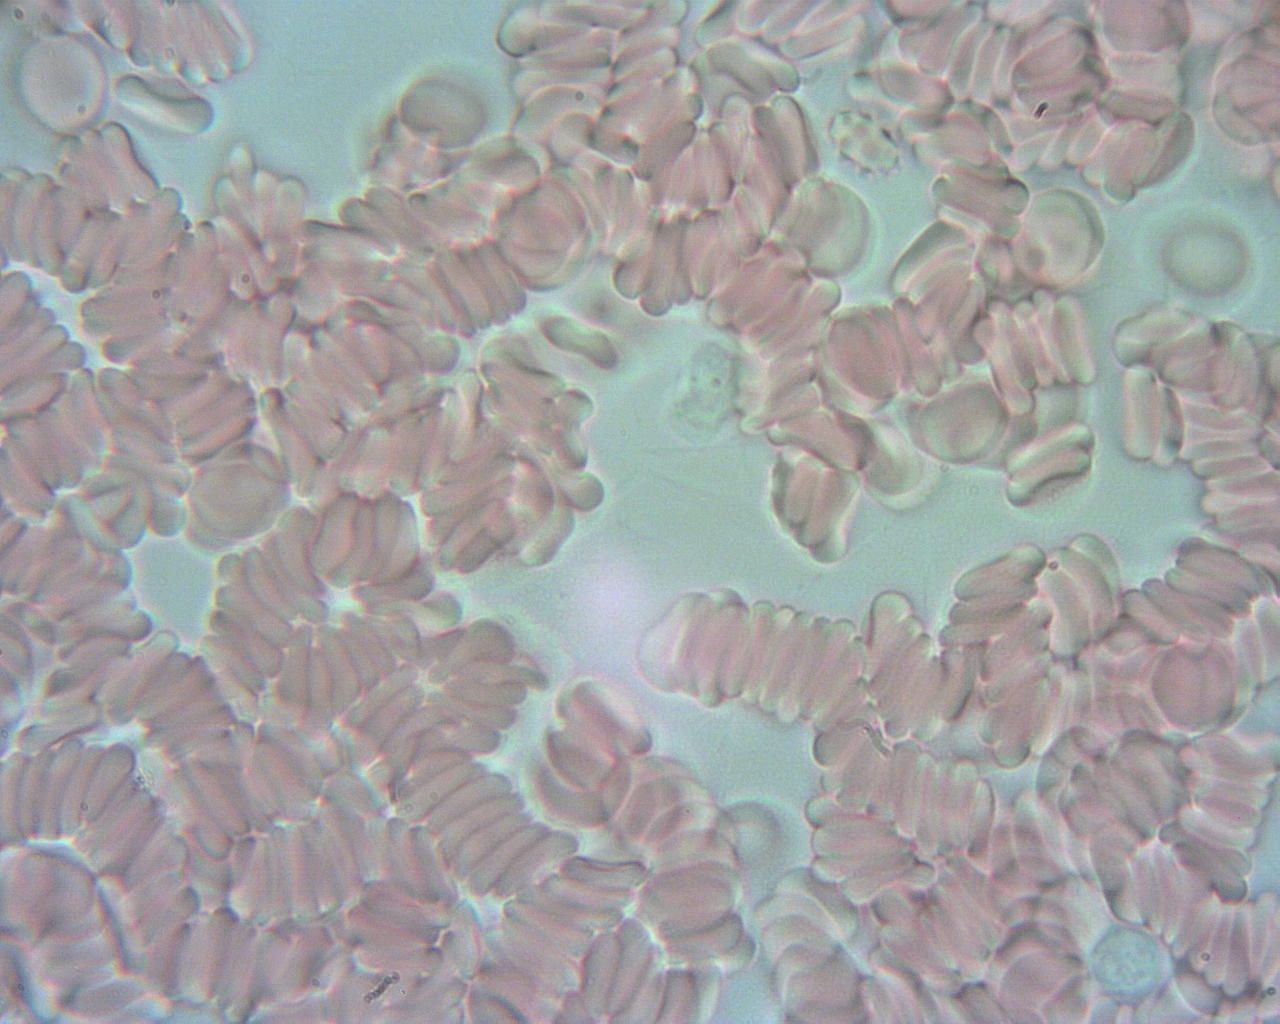 Obraz krwinek czerwonych pod mikroskopem. Widać polepione krwinki